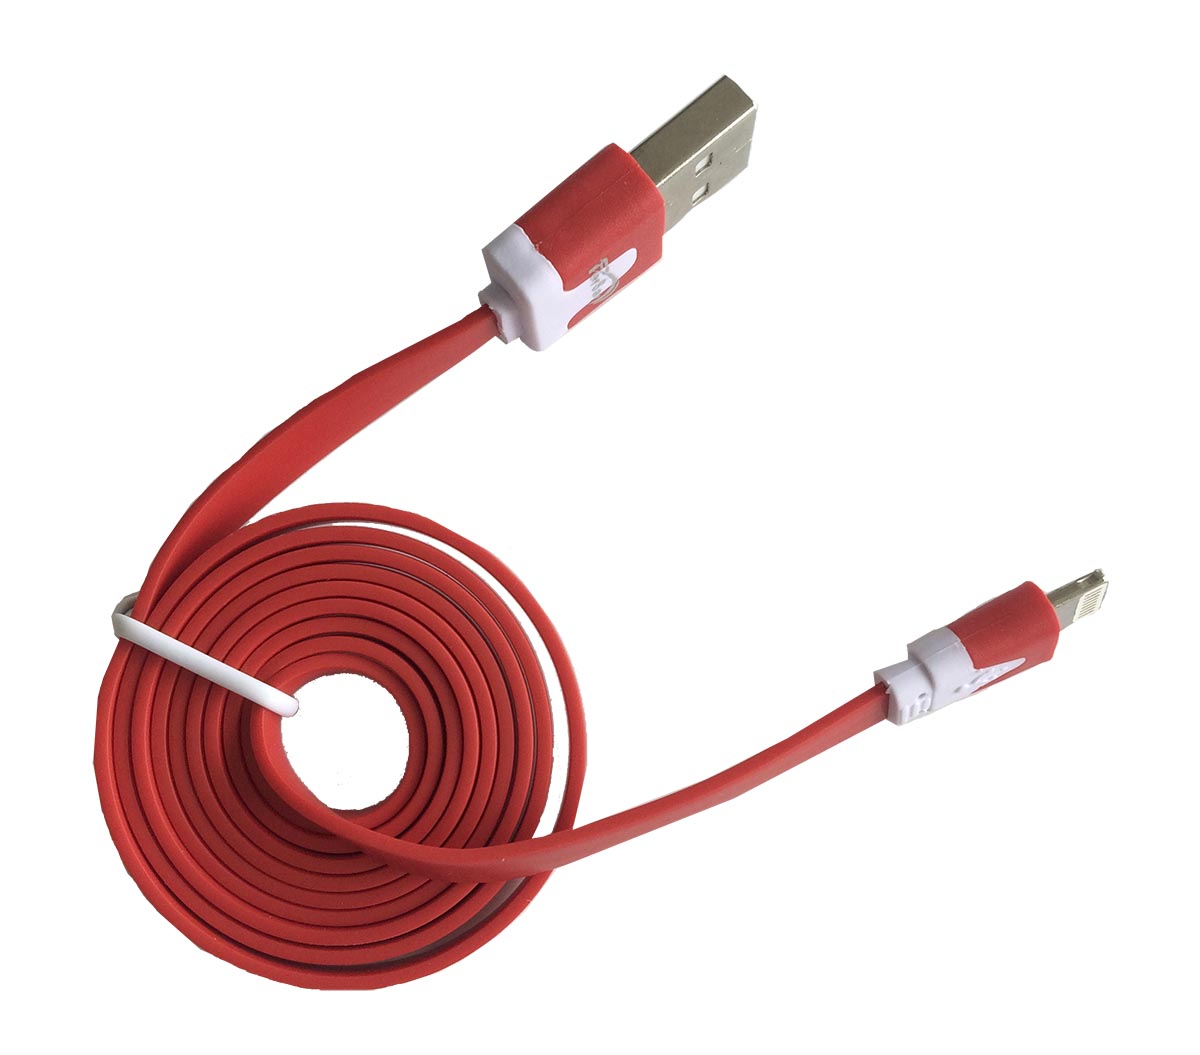 Cable plano carga y datos Iphone 6 rojo - FERSAYC2540R - FERSAY